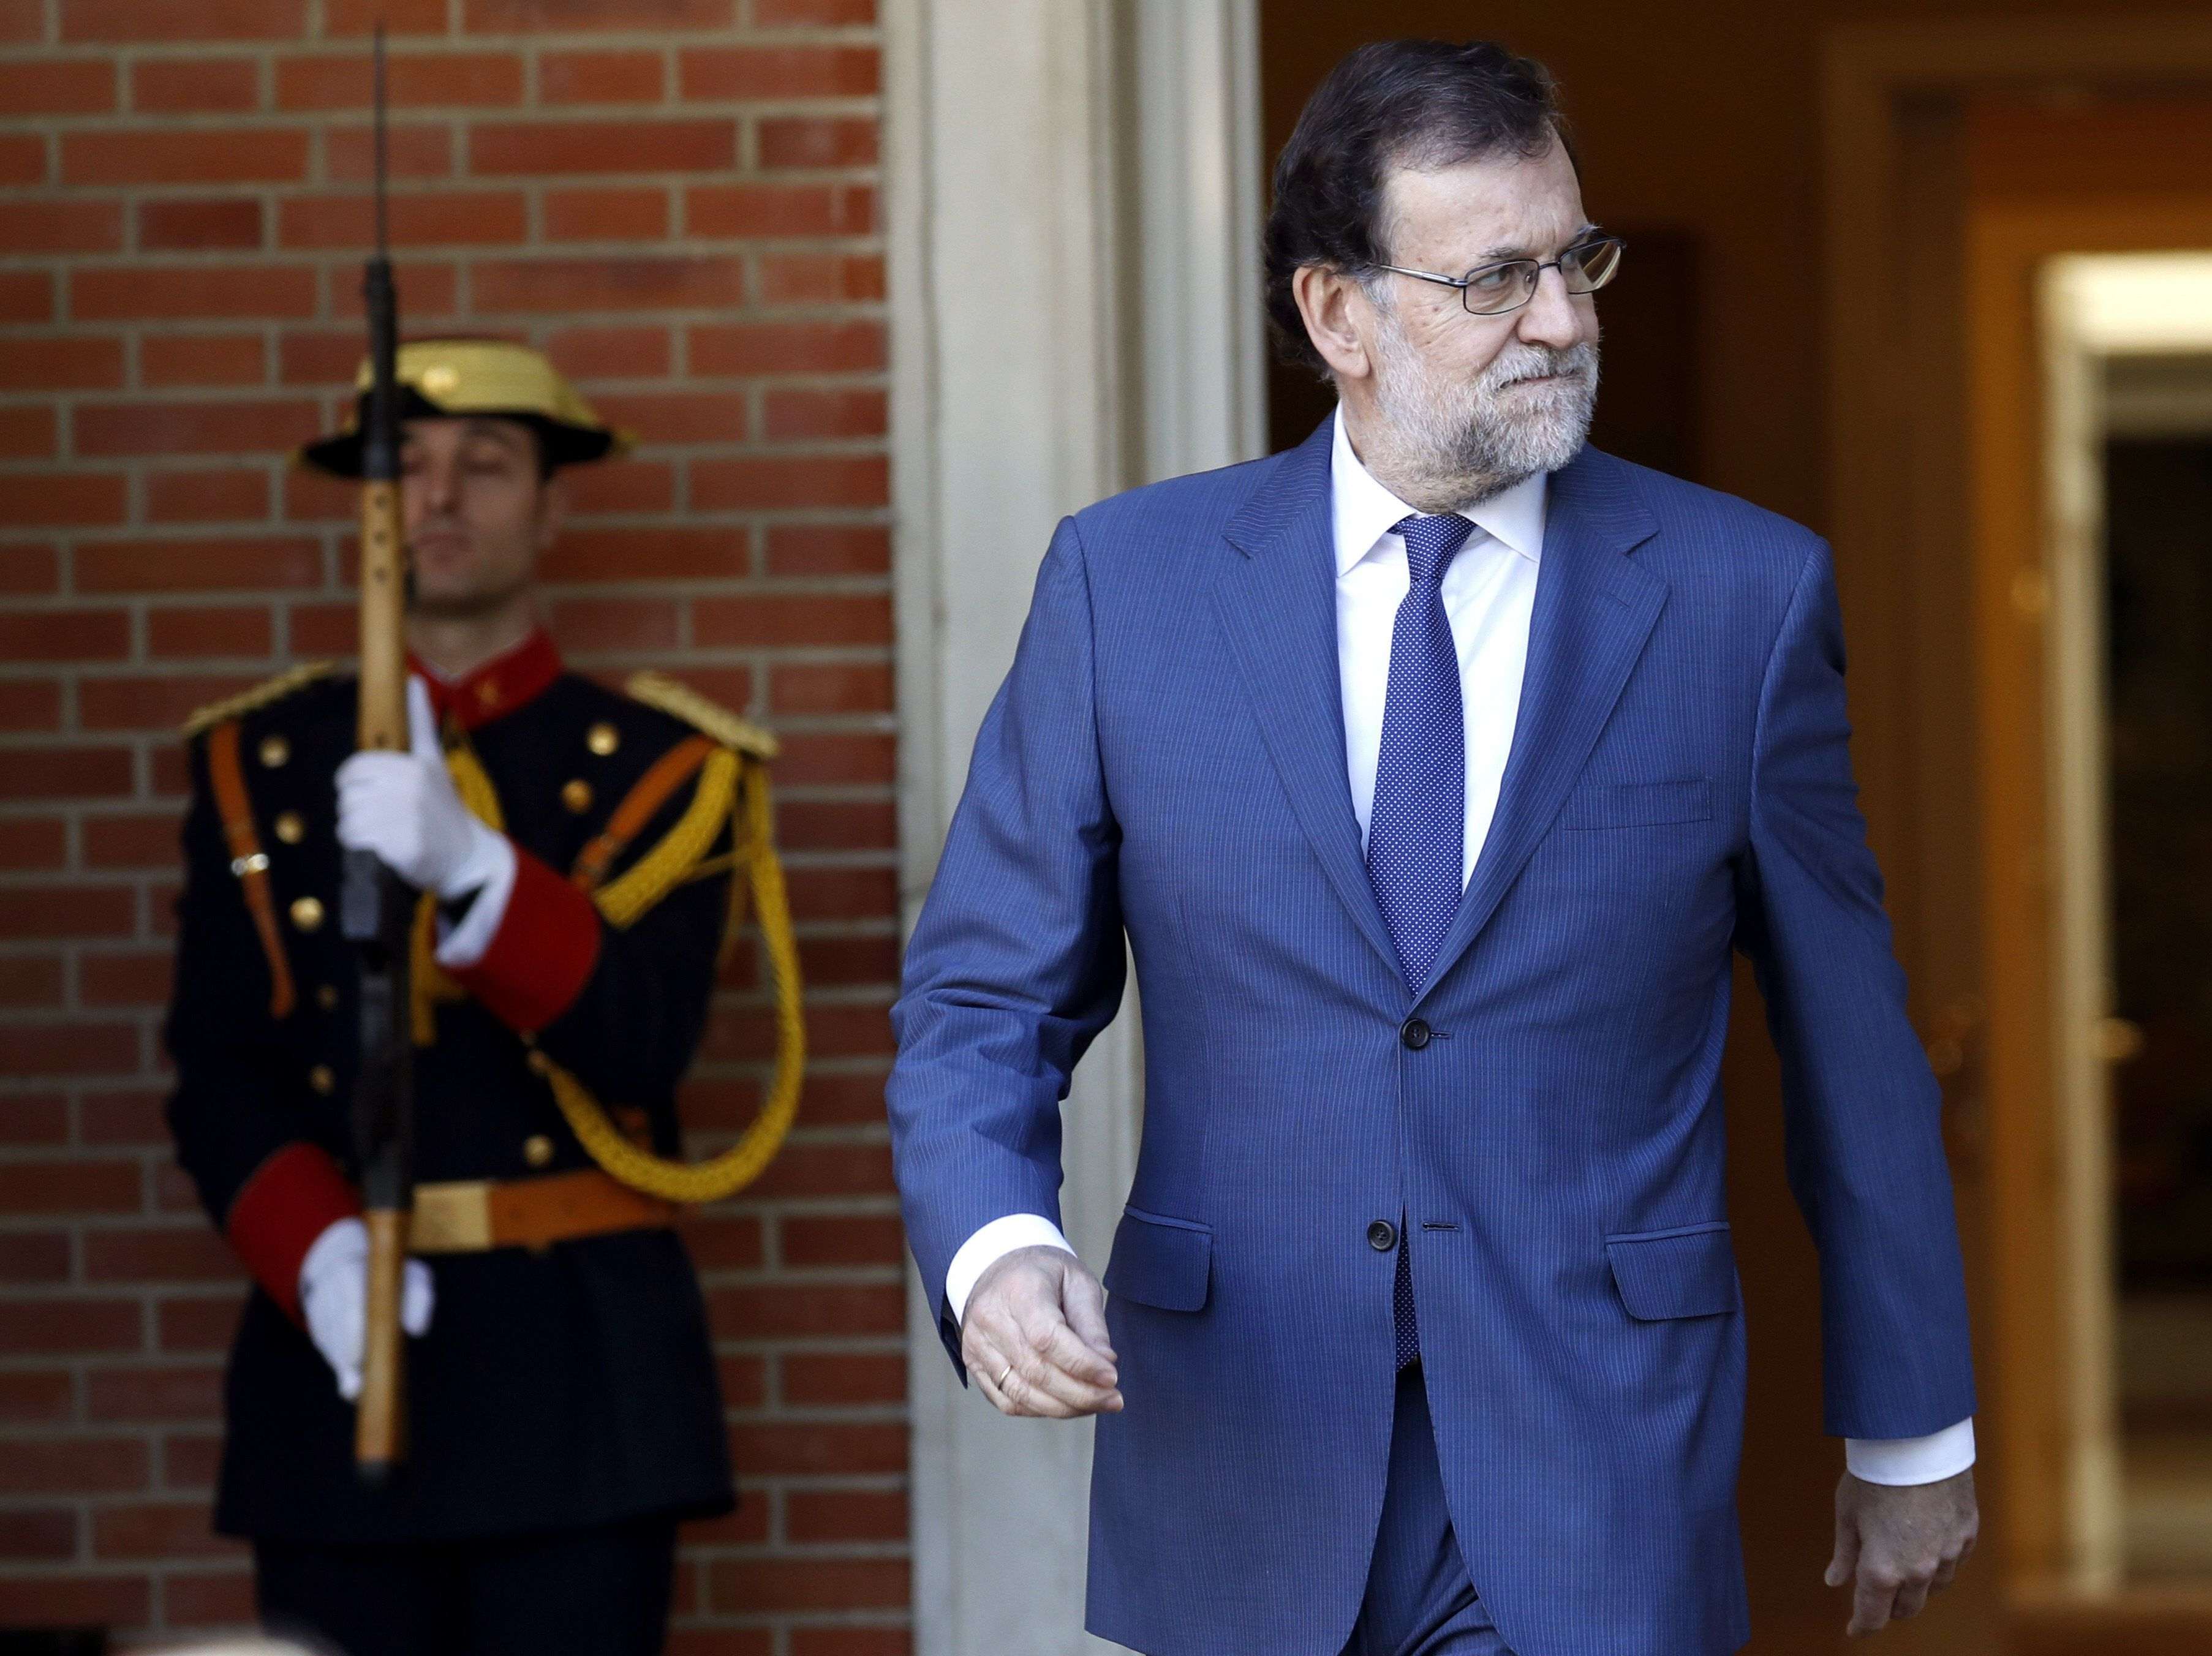 El pla de Rajoy per impedir el referèndum passa per precintar els col·legis electorals